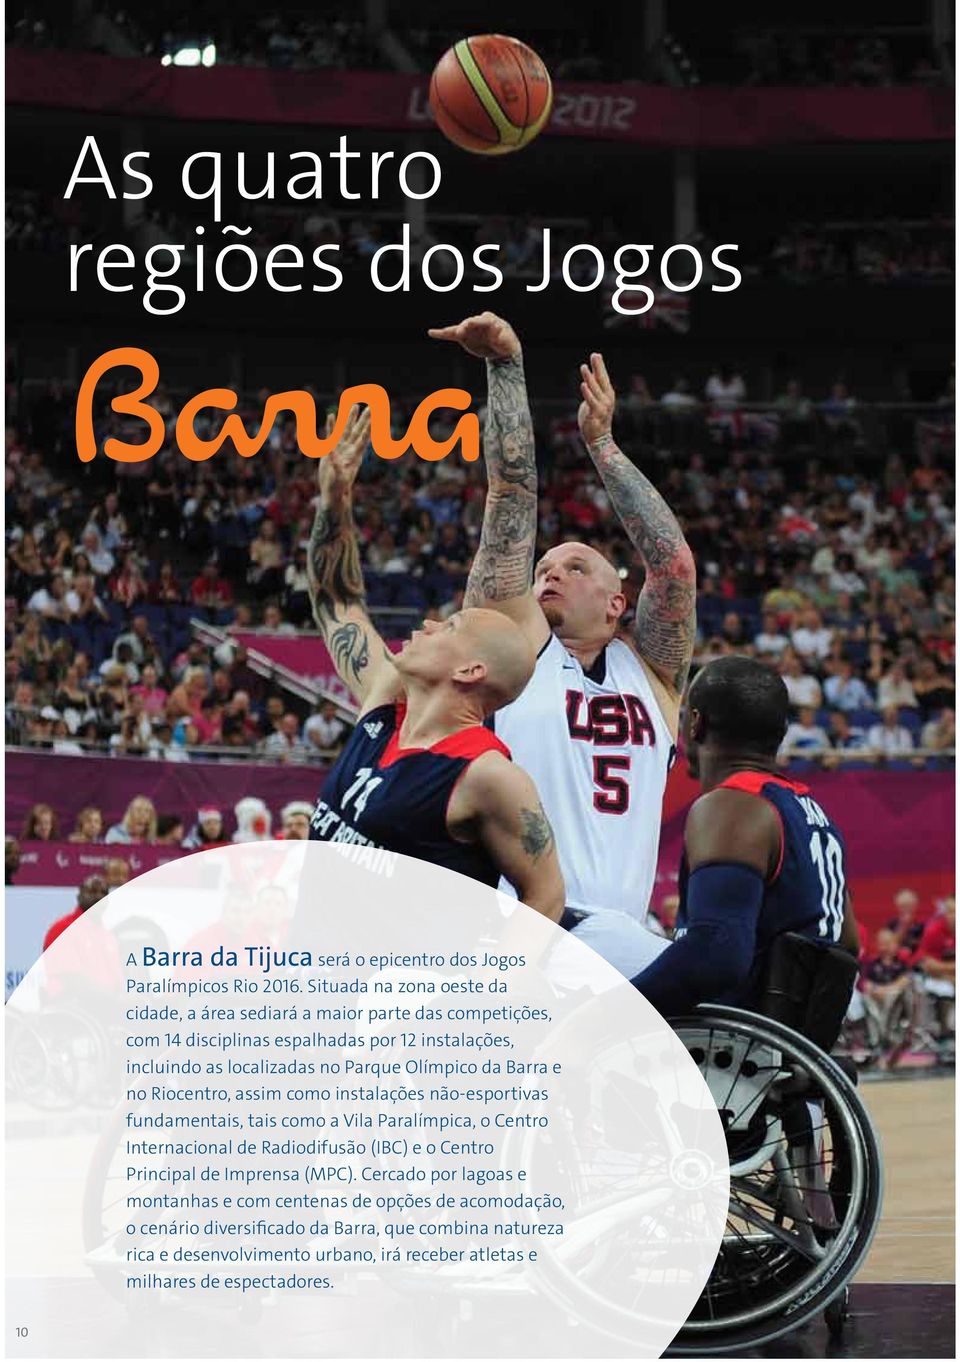 Olímpico da Barra e no Riocentro, assim como instalações não-esportivas fundamentais, tais como a Vila Paralímpica, o Centro Internacional de Radiodifusão (IBC) e o